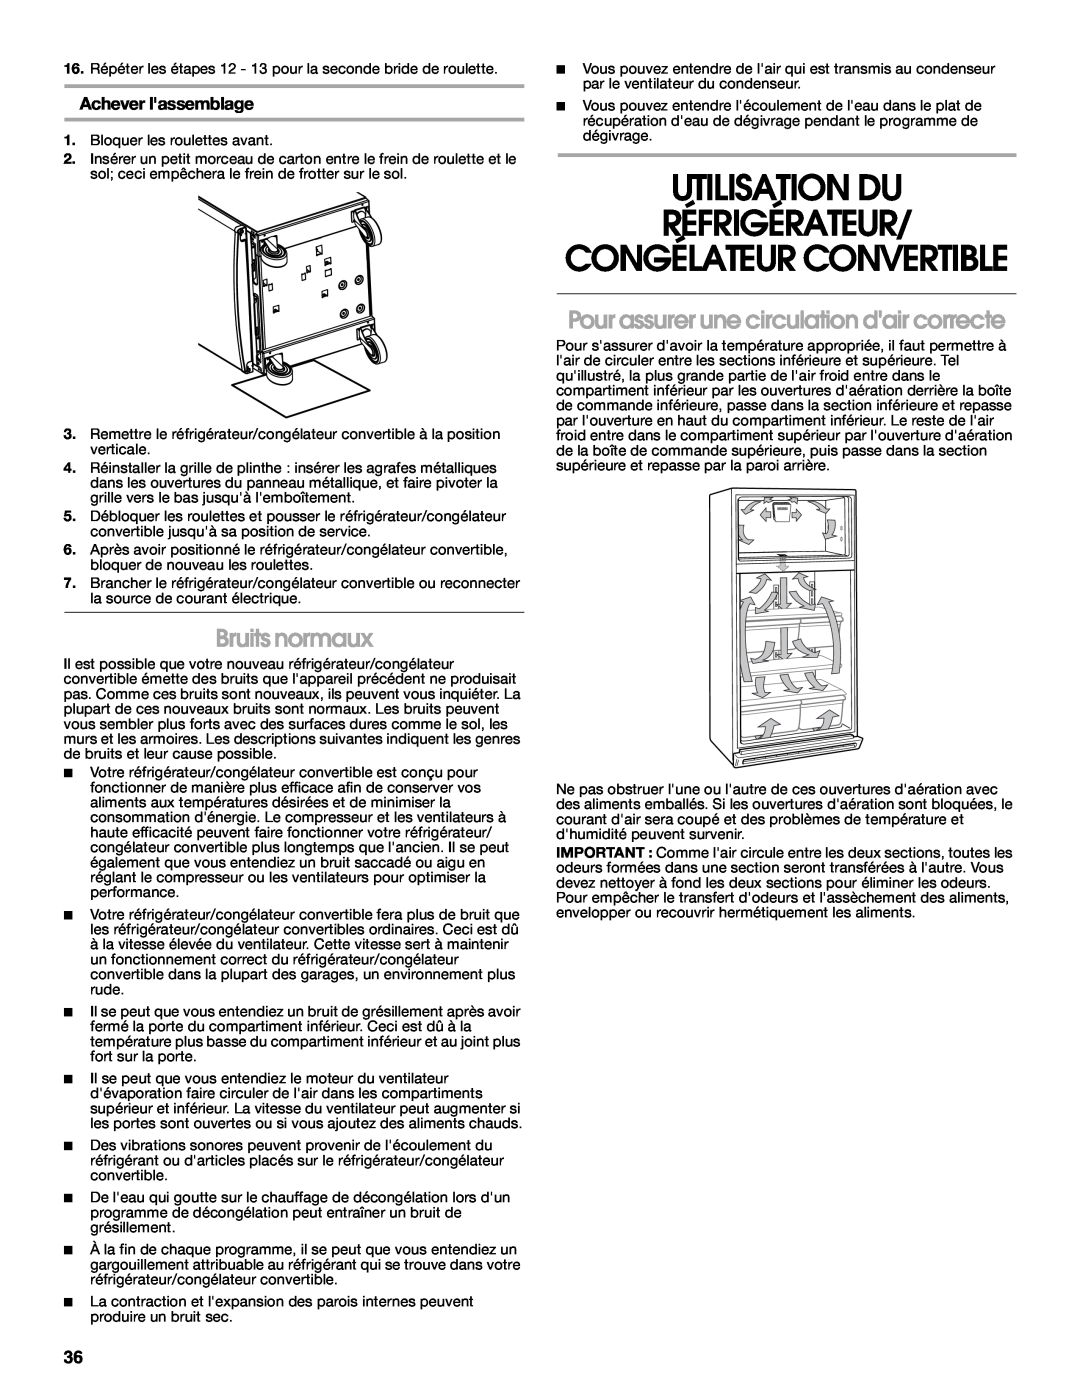 Whirlpool GAFZ21XXMK00 manual Utilisation Du Réfrigérateur, Congélateur Convertible, Bruits normaux, Achever lassemblage 